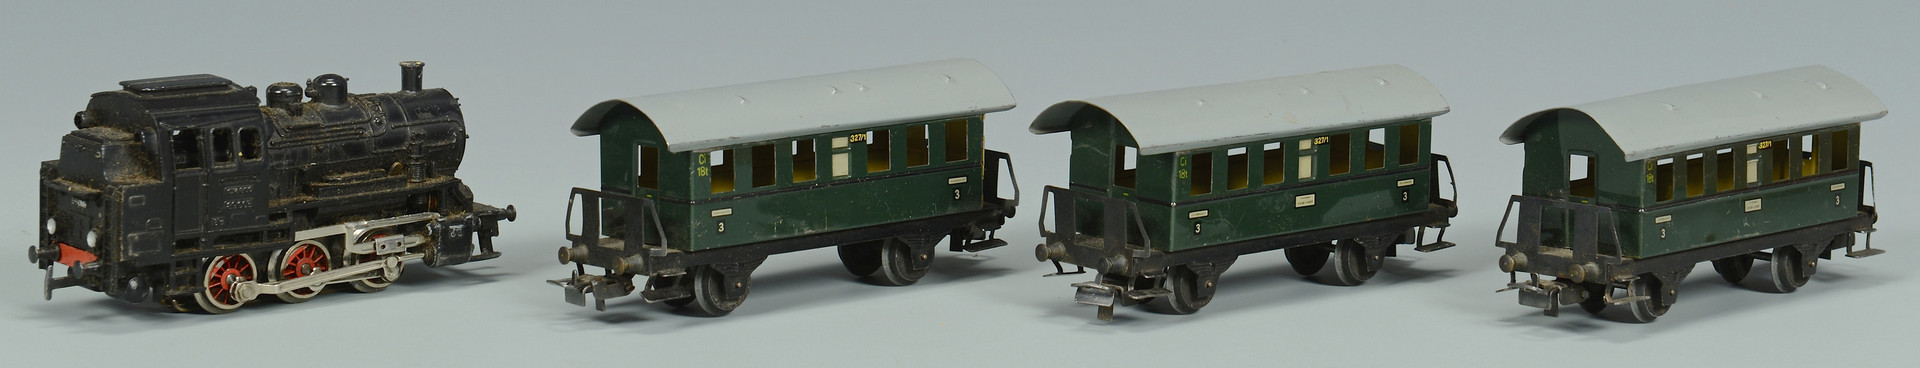 Lot 462: Boxed Train sets incl. Lionel 352E, American Flyer